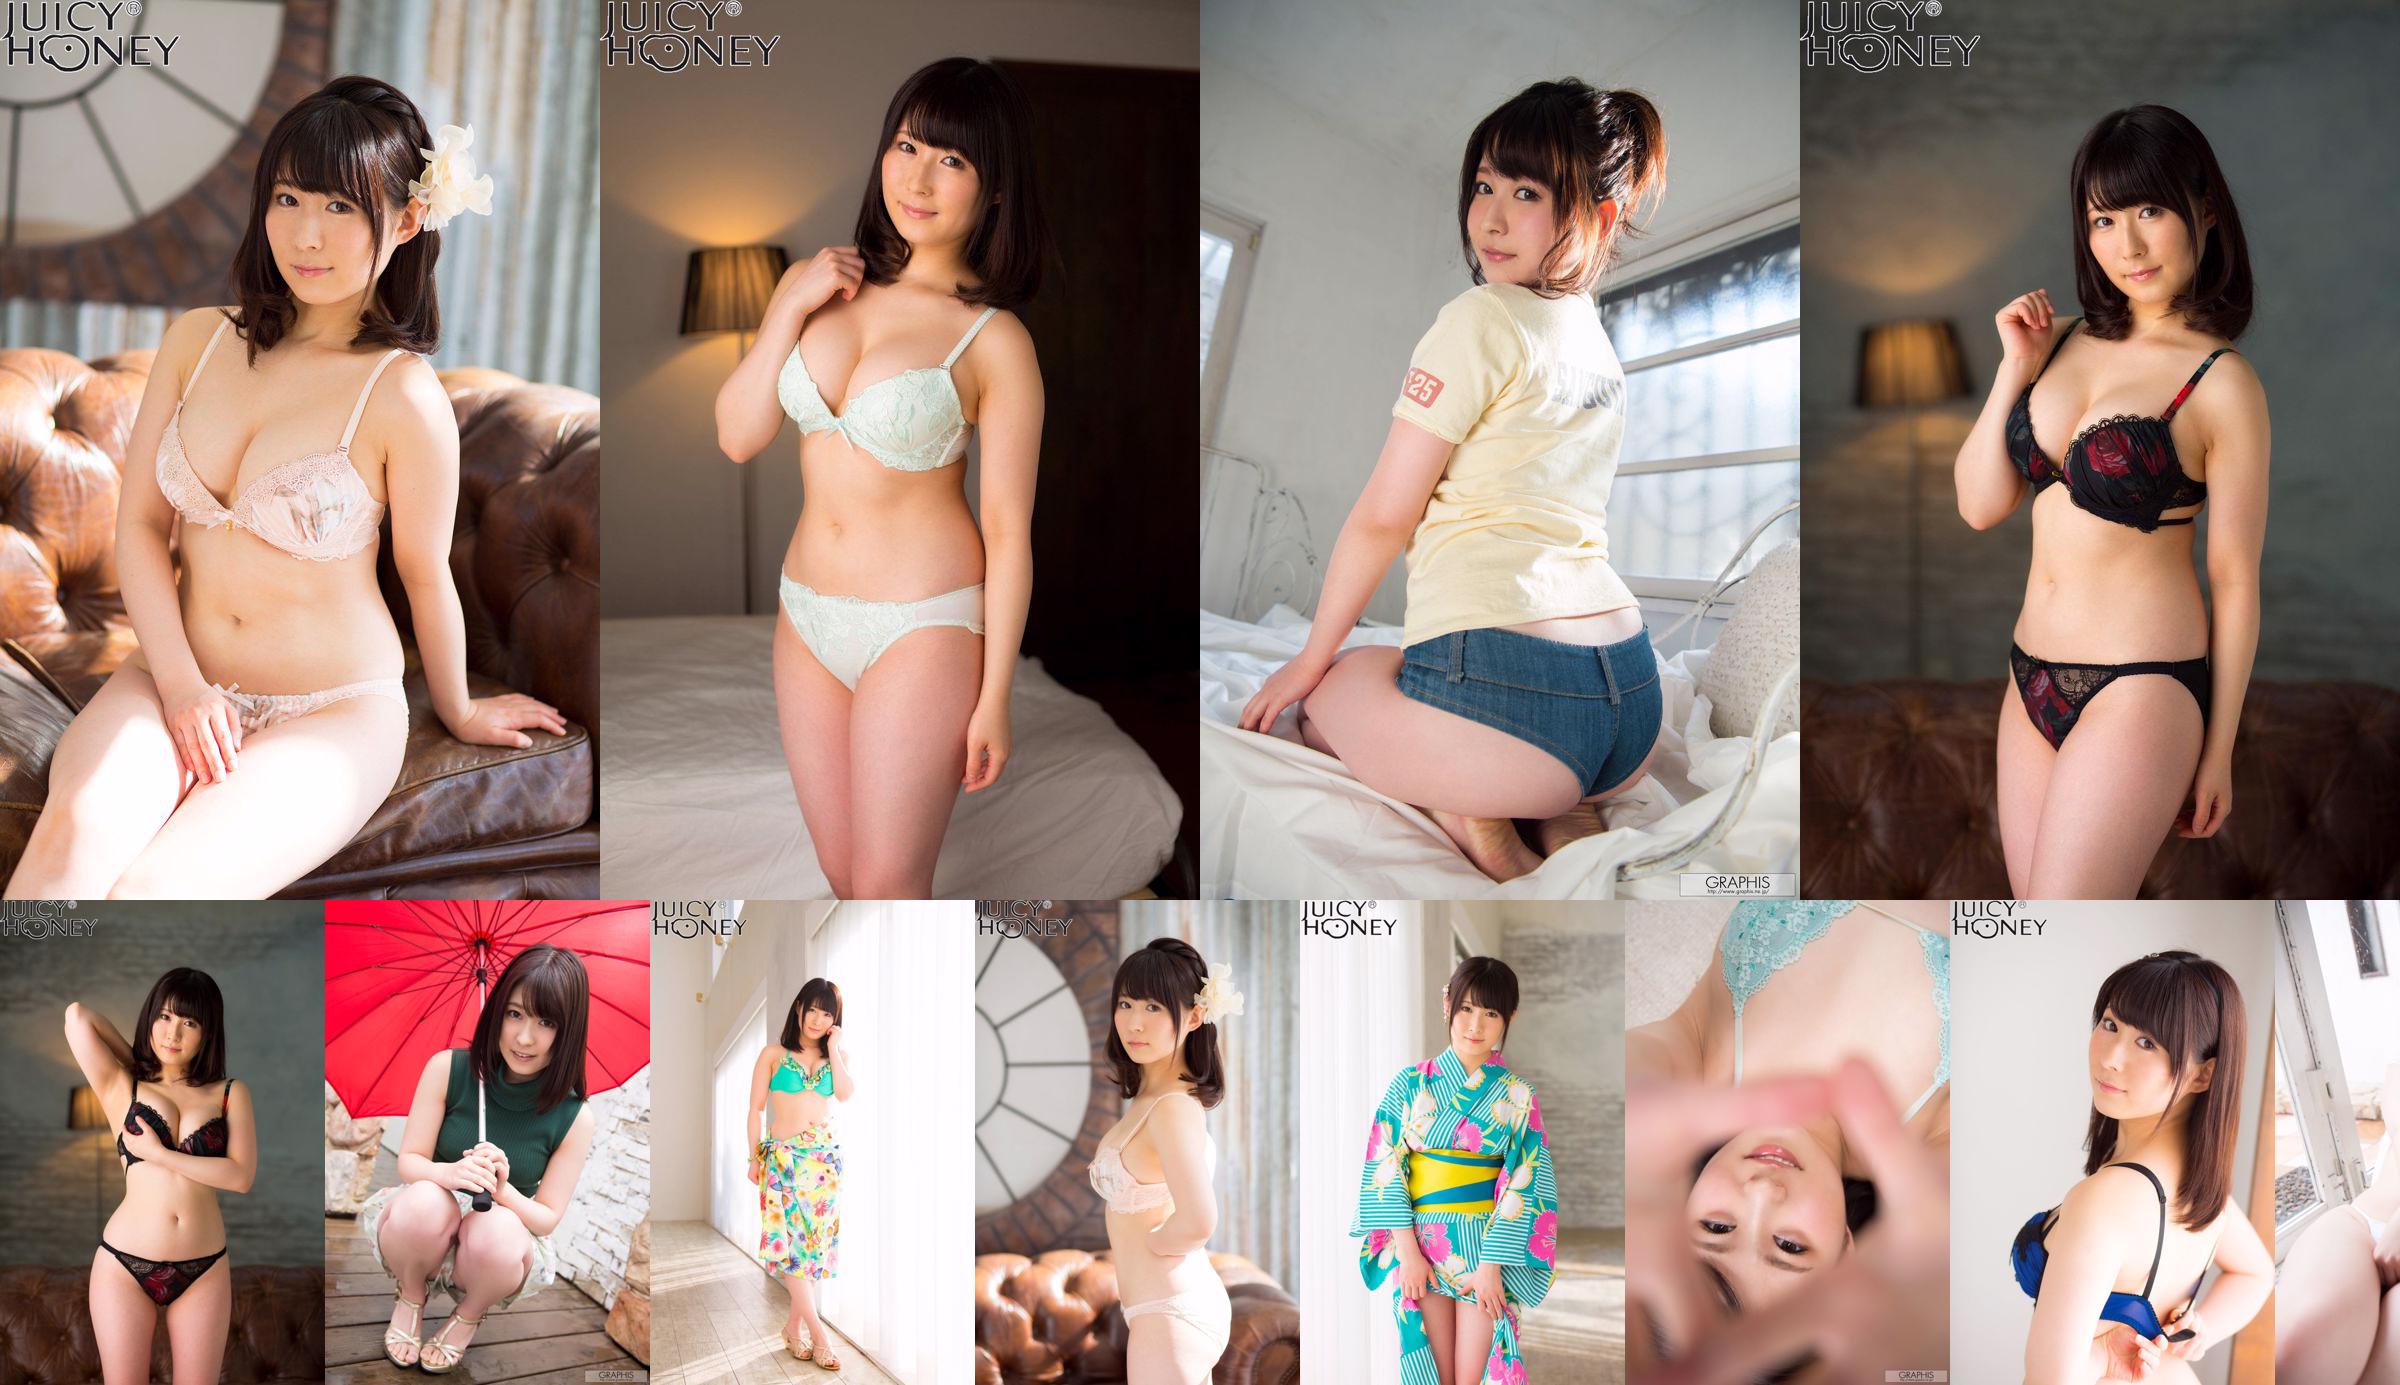 [X-City] Juicy Honey jh216 Asuka り ん Rin Asuka No.b9b0c0 Trang 7